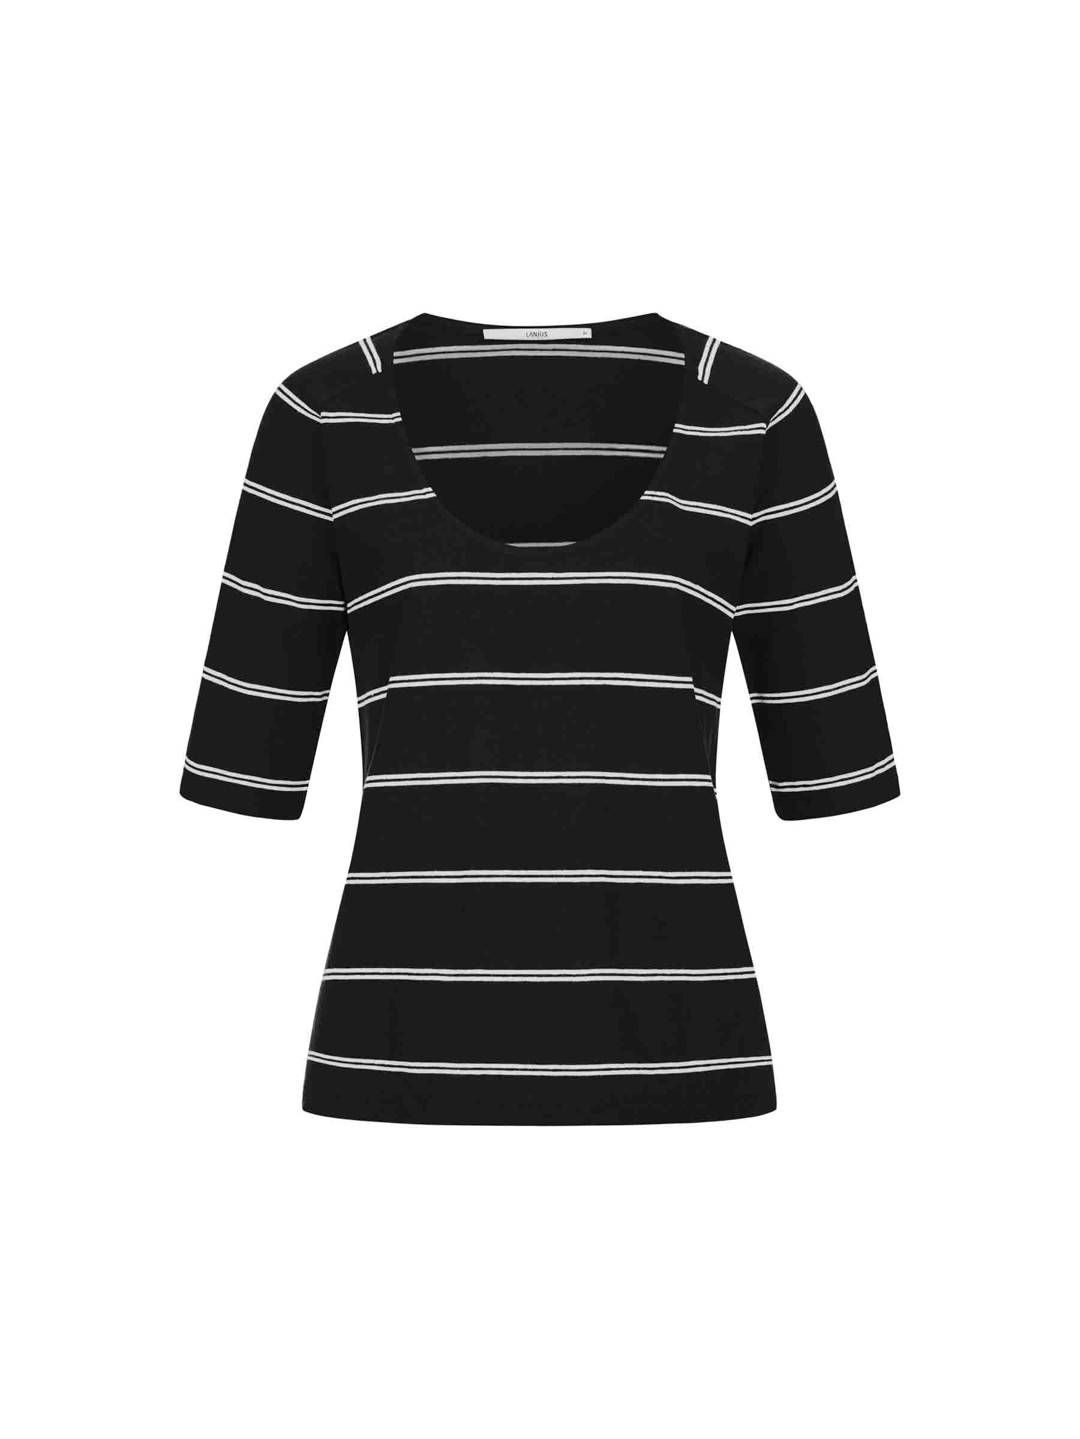 Raglan shirt with stripes from LANIUS